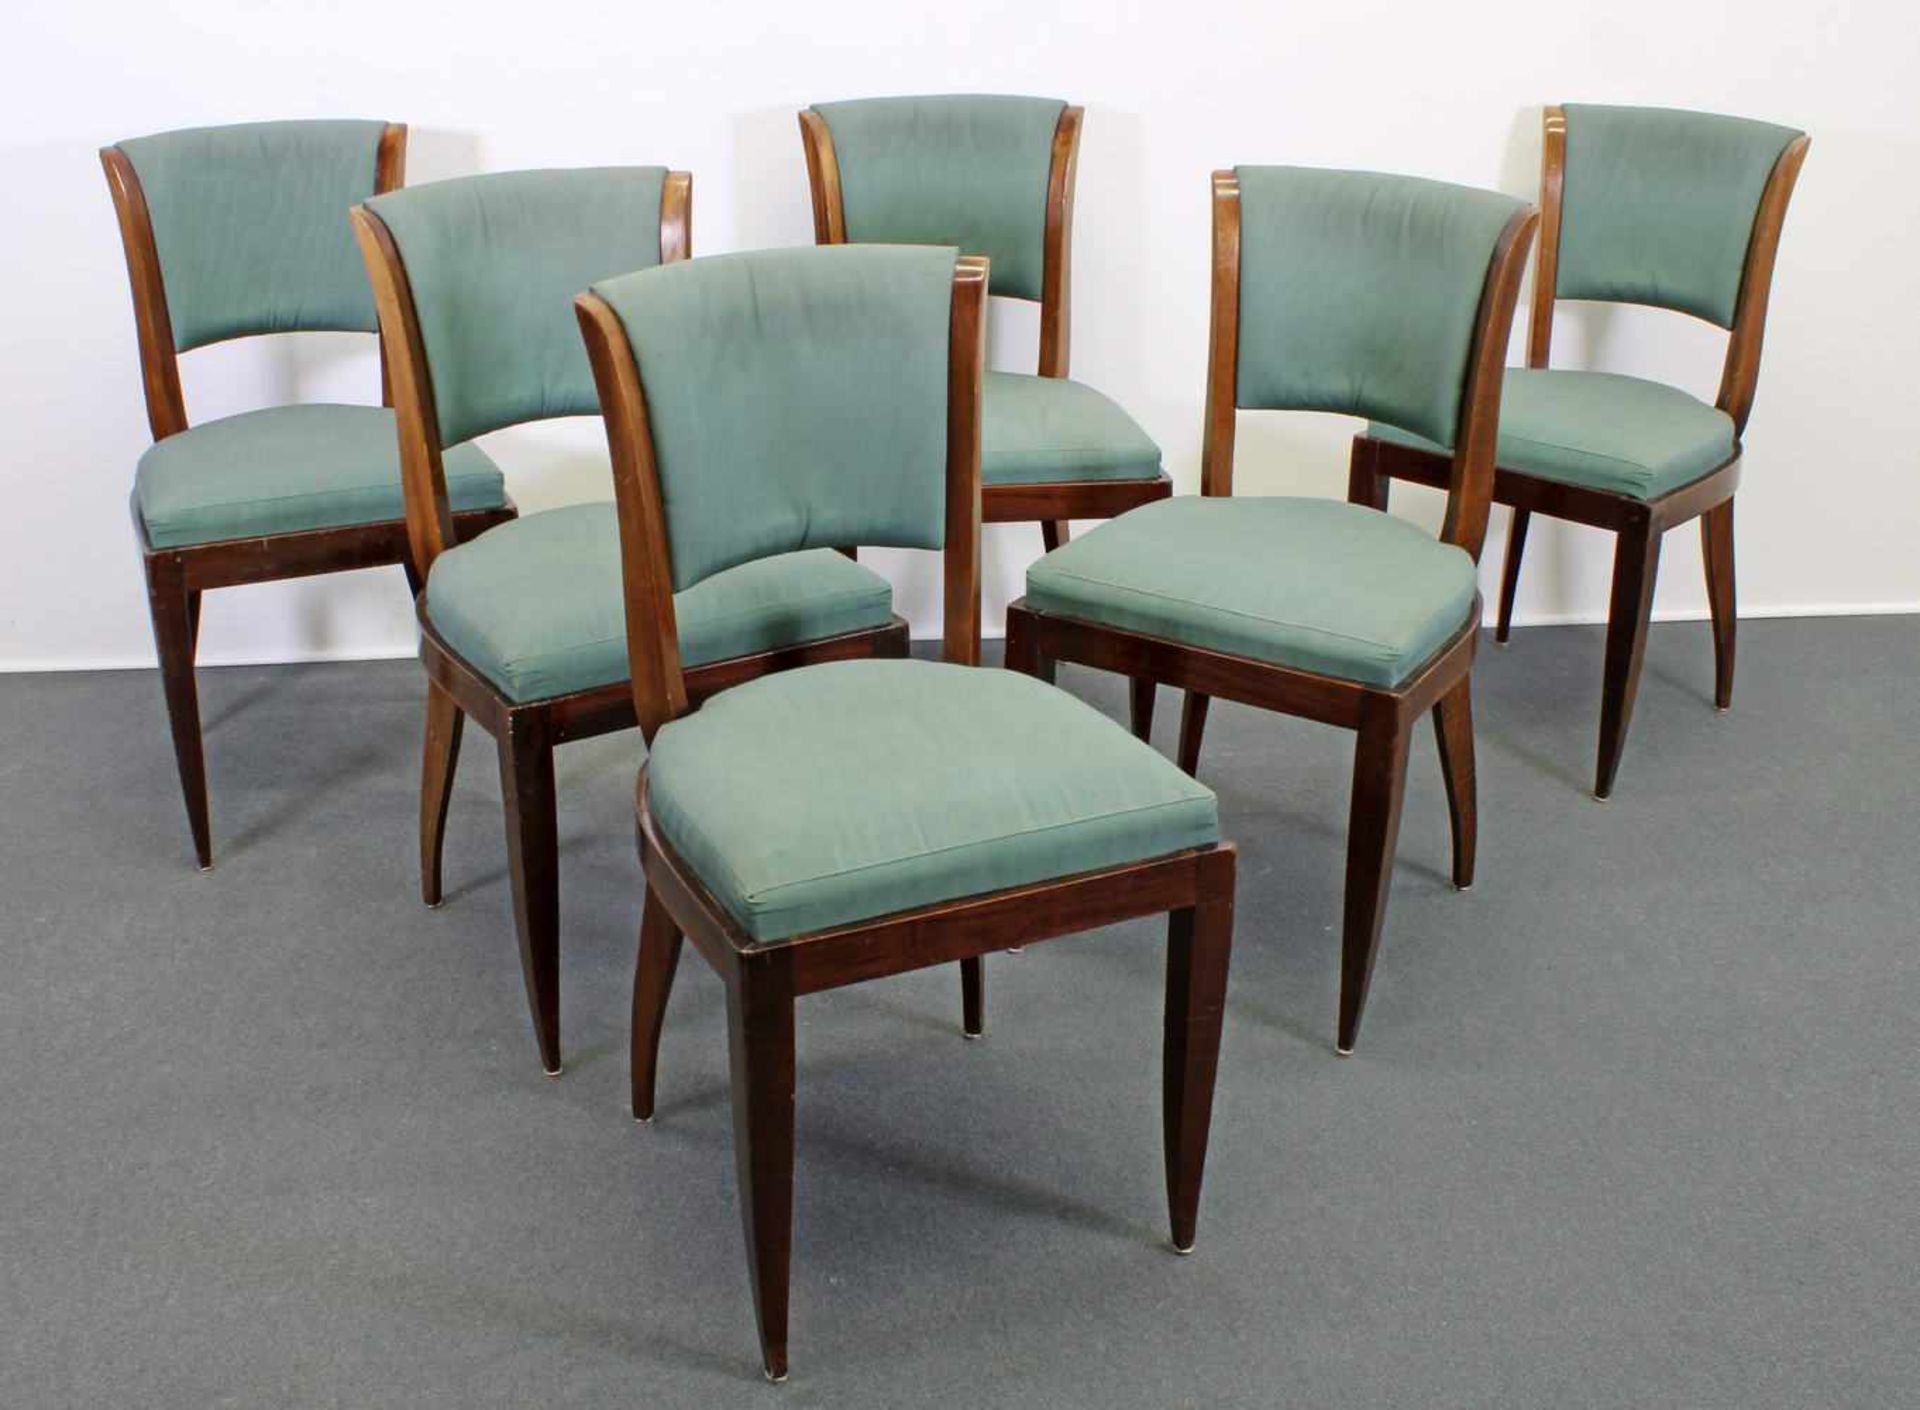 6 Stühle, Art Deco, Frankreich, um 1930, Mahagoni, Sitz- und Rückenpolster, teils leicht fleckig, - Bild 2 aus 2